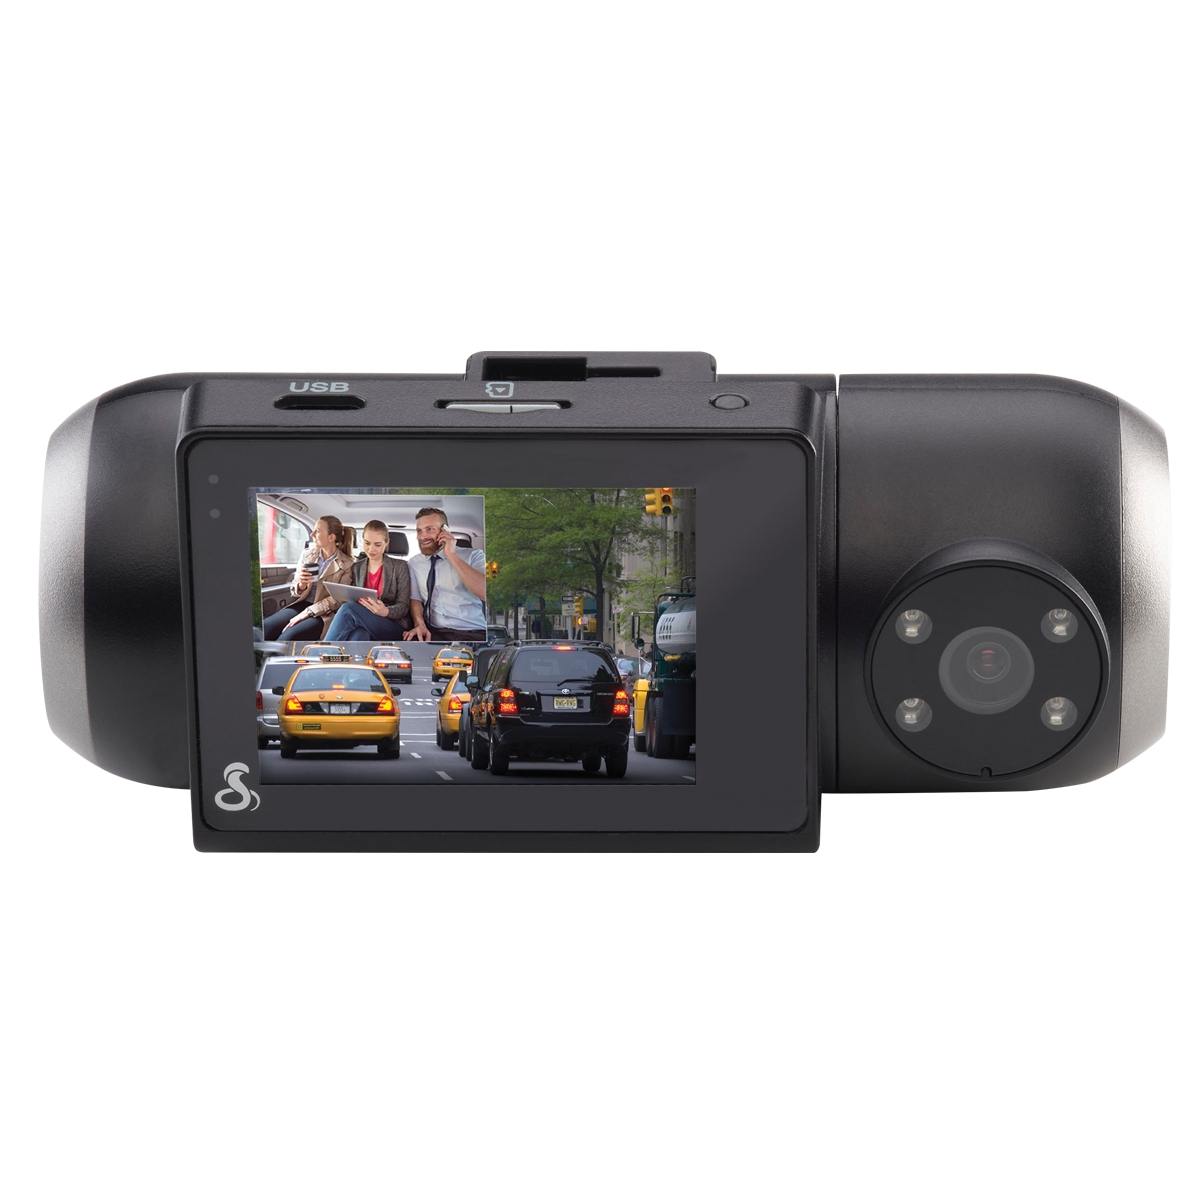 Cobra SC 201 Dual-View Smart Dash Cam